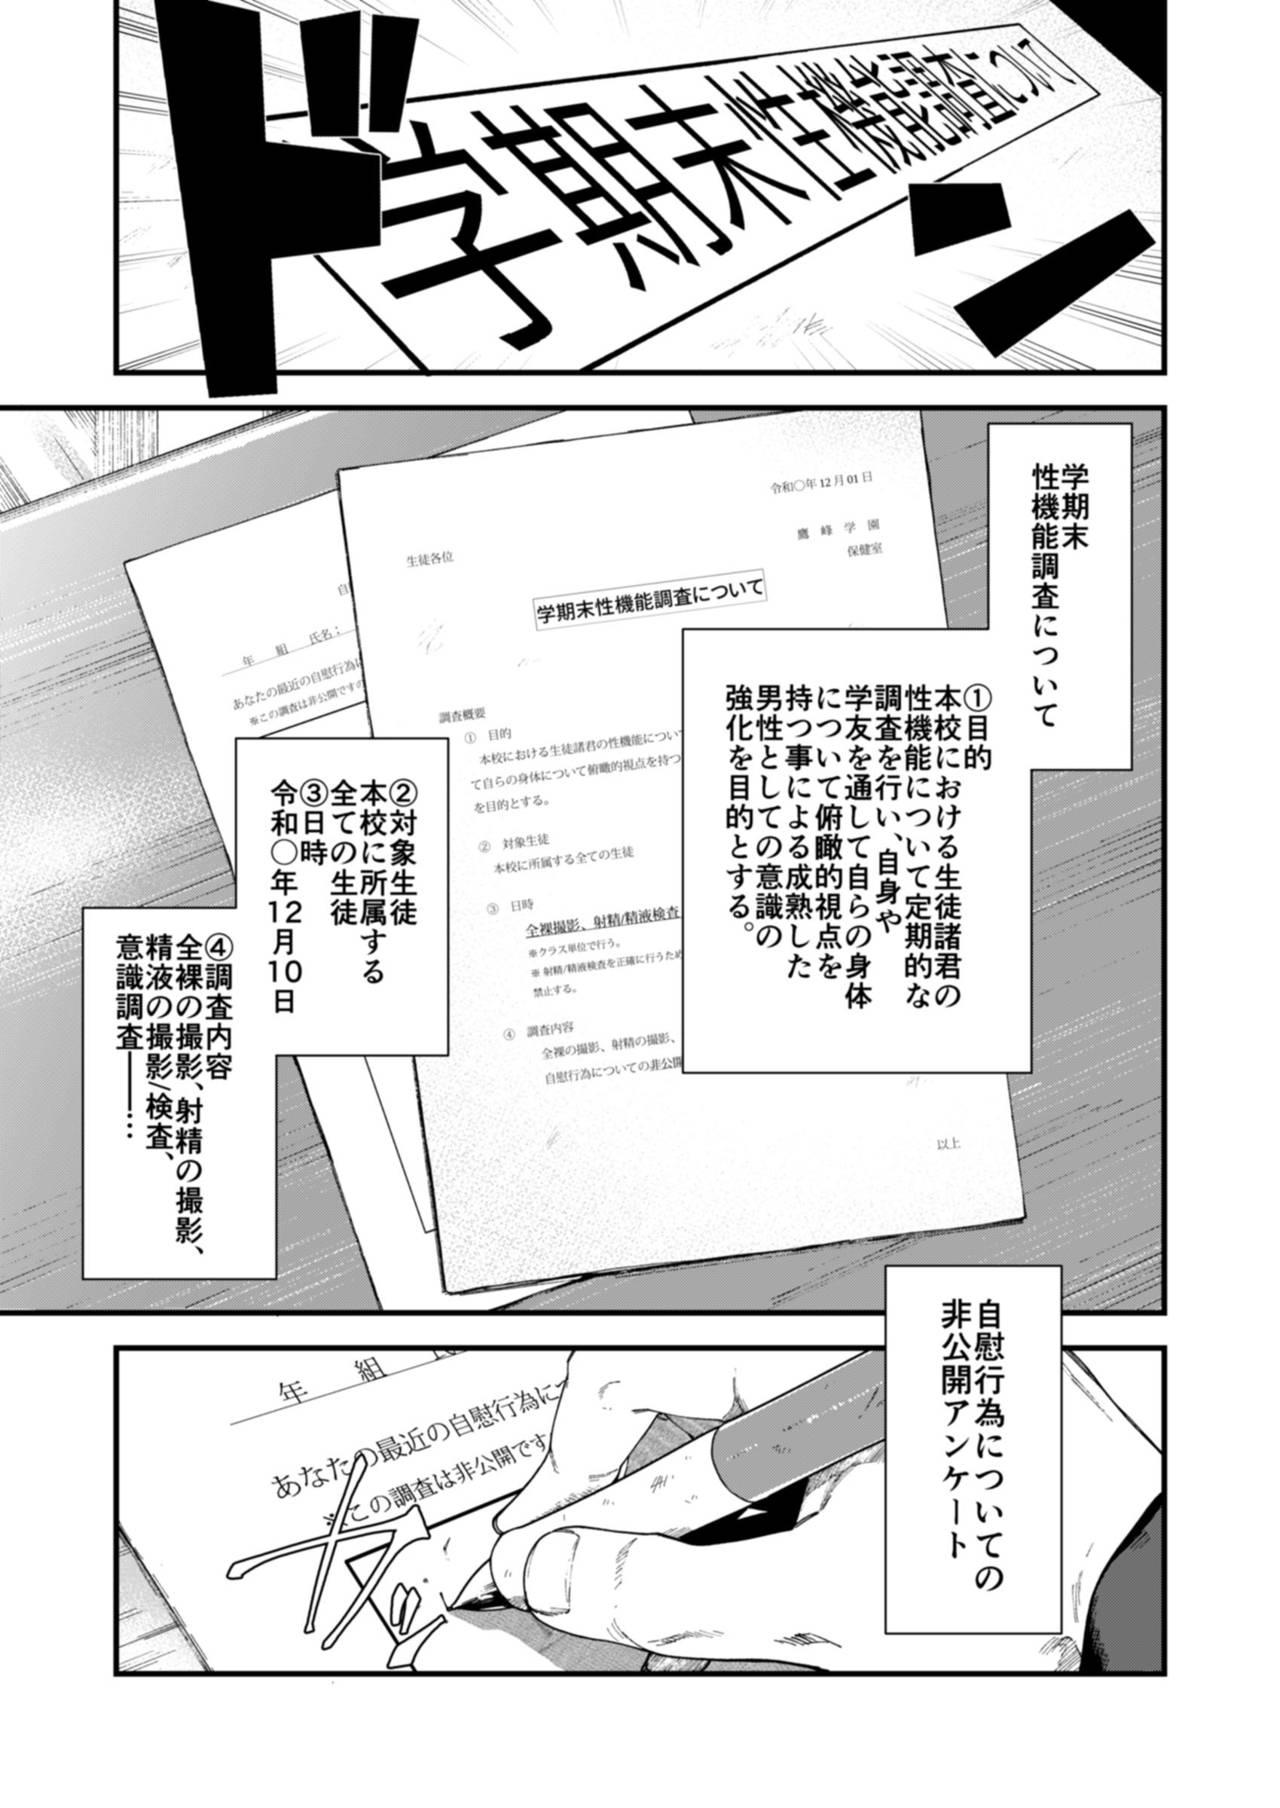 No Condom Gakkimatsu Seikinou Chousa Prostituta - Page 5